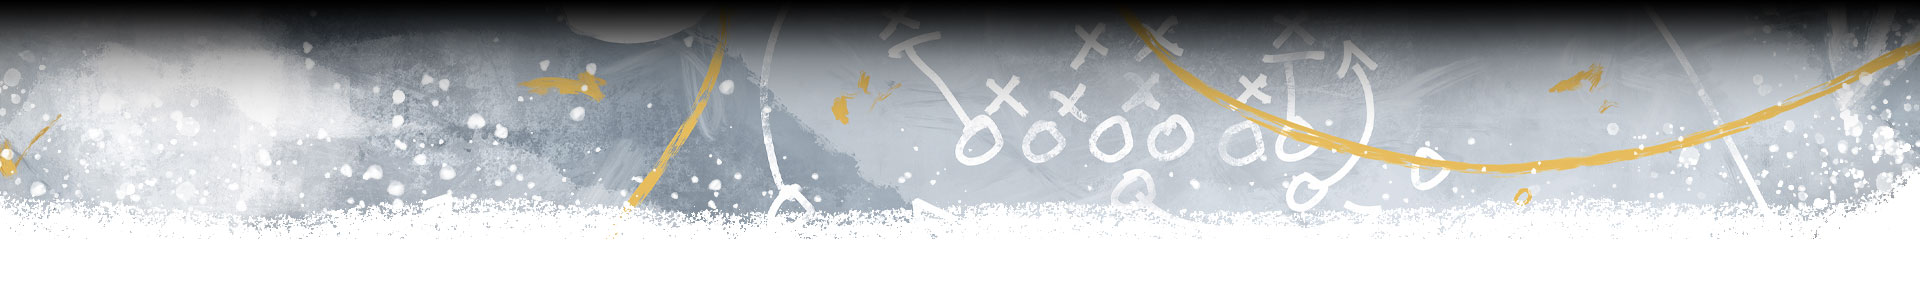 Une image décorative de schéma stratégique de football.